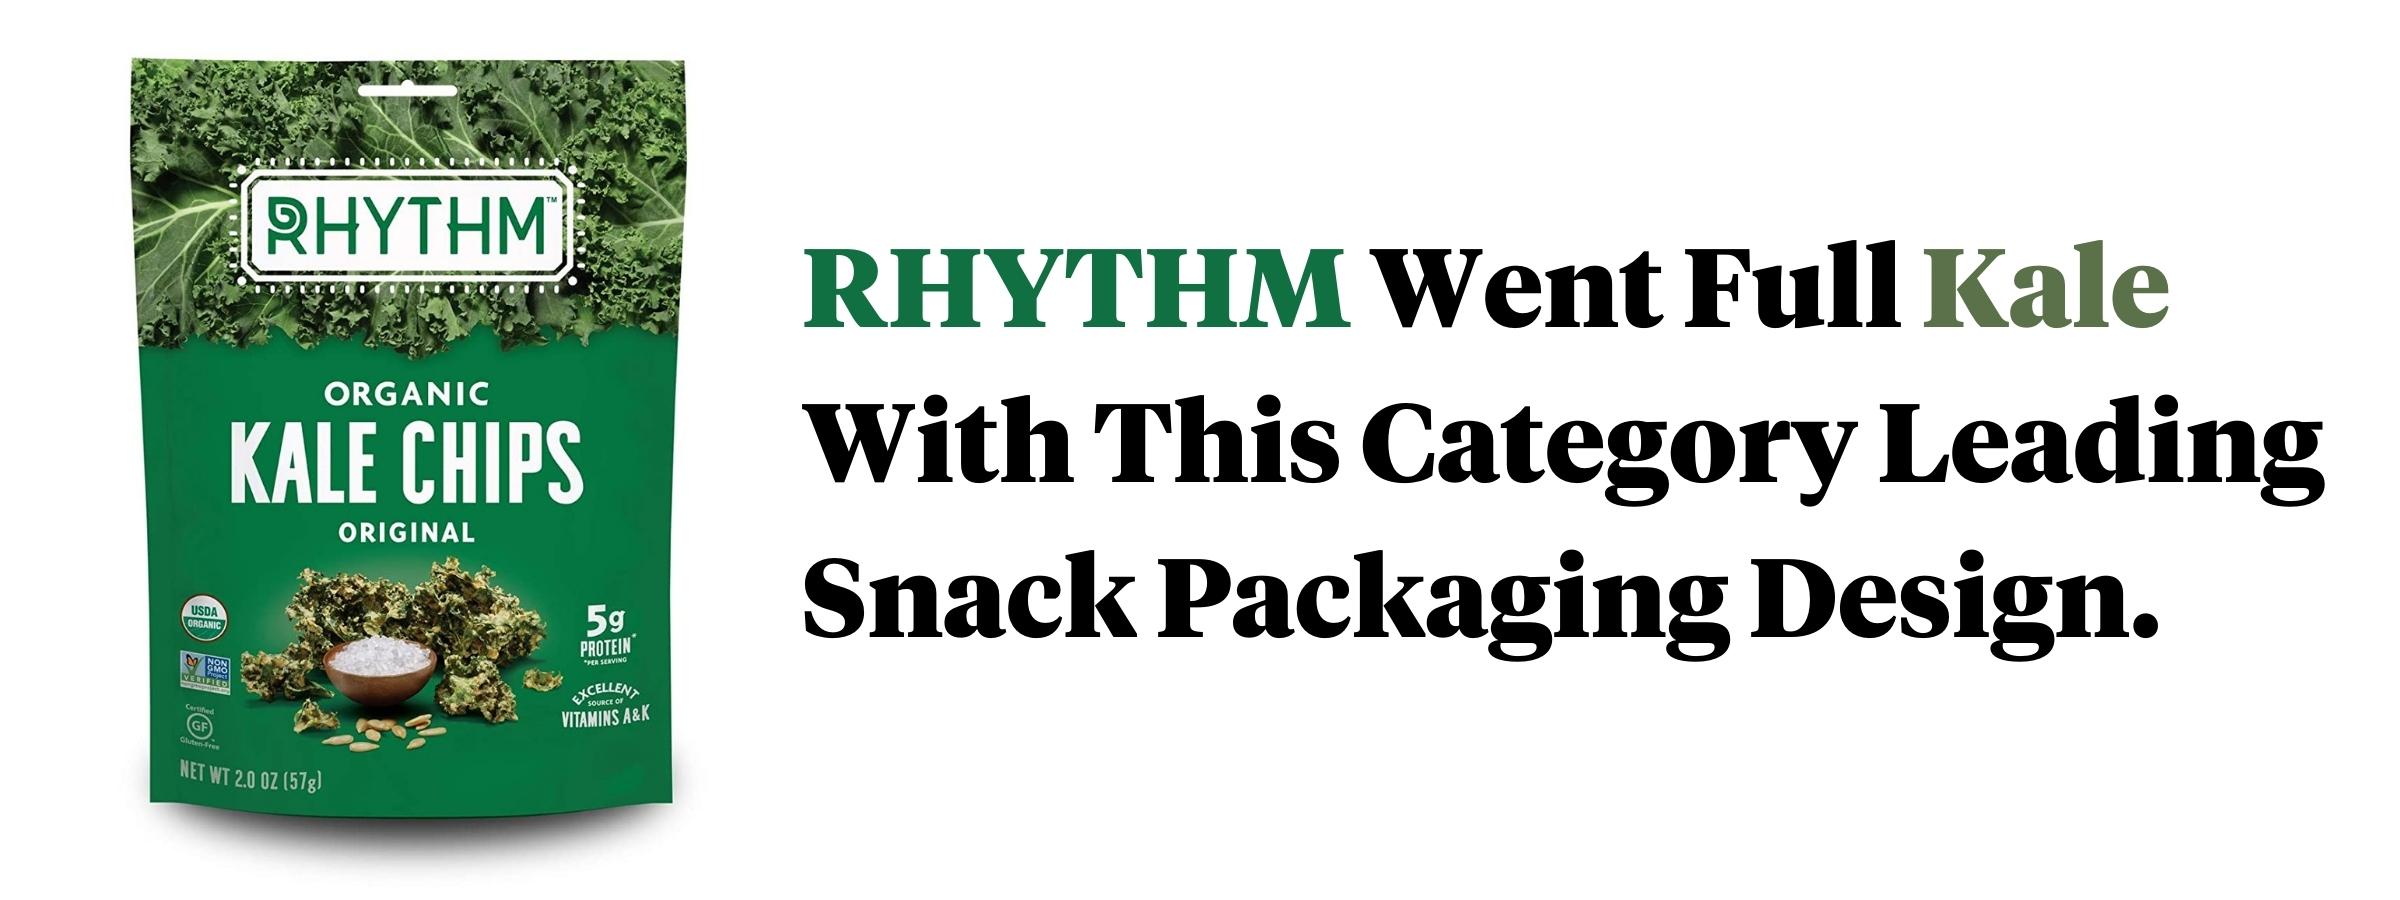 RHYTHM Kale Chips Packaging Design